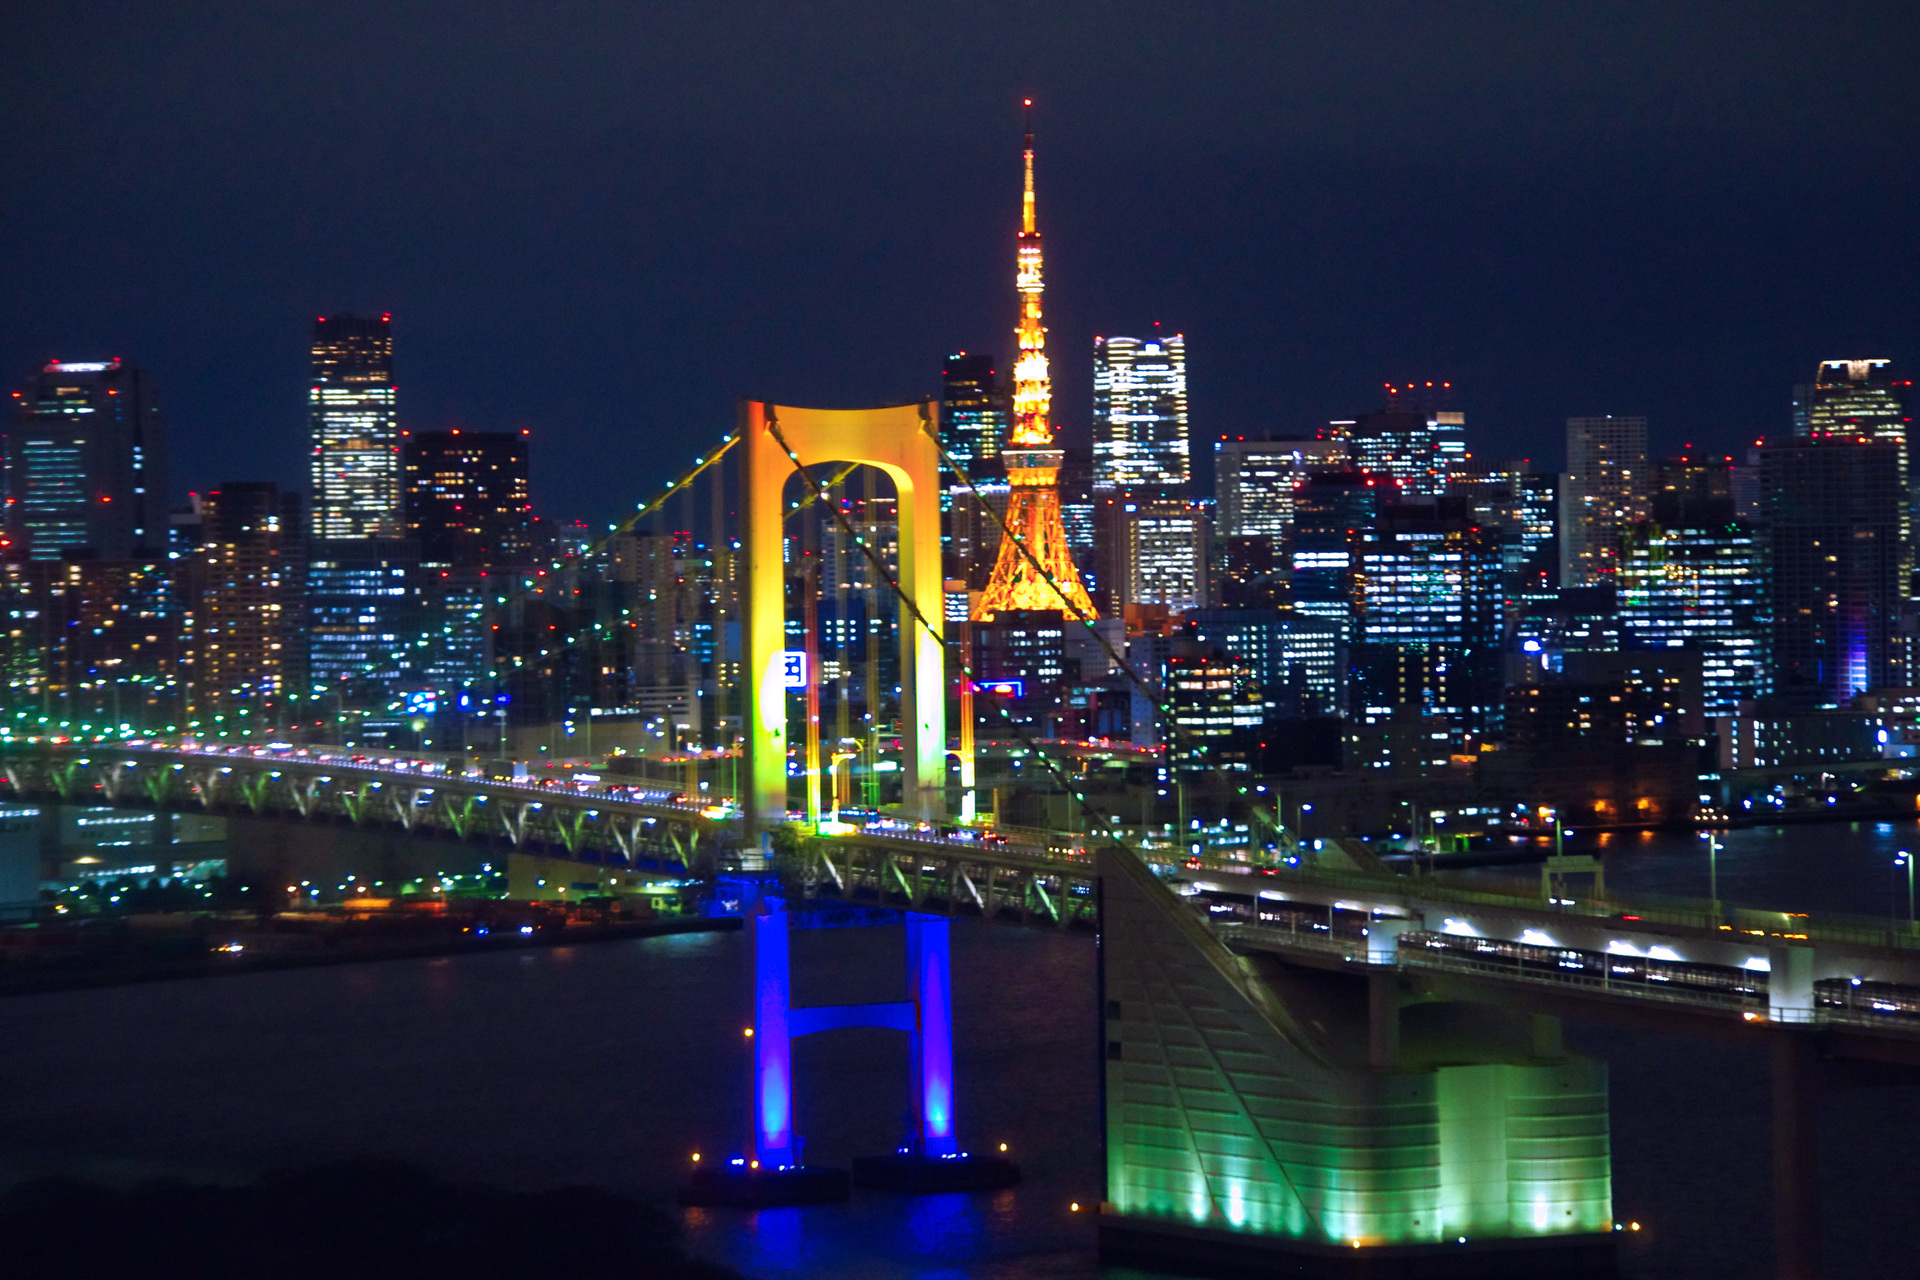 ベスト東京タワー 夜景 壁紙 Iphone 最高の花の画像